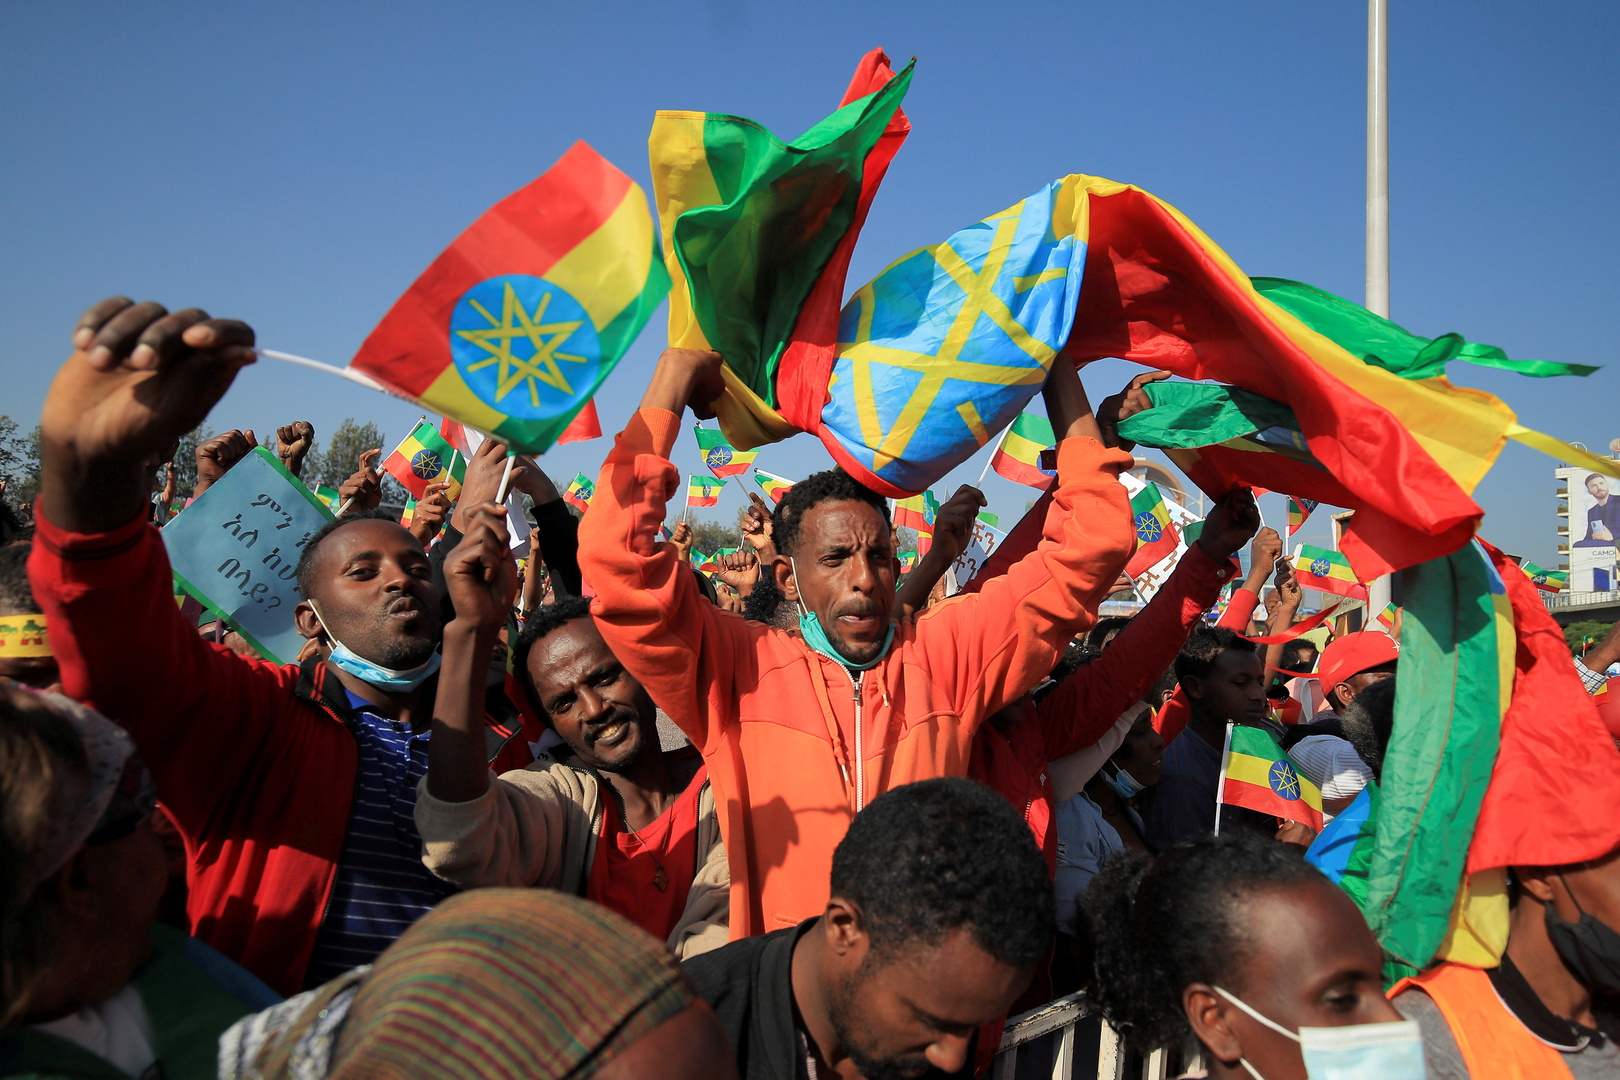 الأمم المتحدة تعلن اعتقال 9 من موظفيها وأفراد أسرهم في إثيوبيا